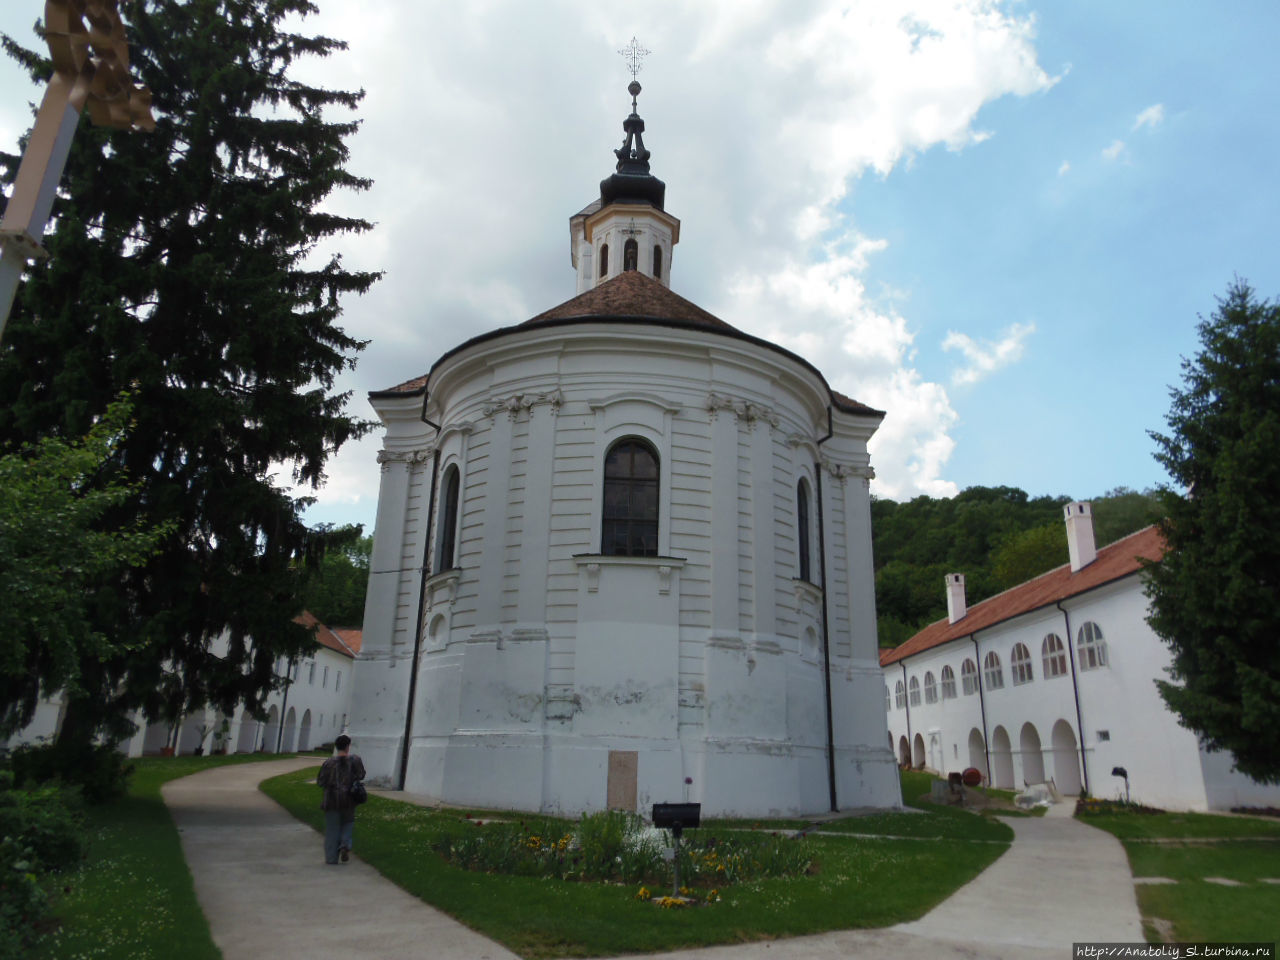 Фрушка гора. Часть 6. Монастырь Врдник. Фрушка-Гора Национальный парк, Сербия